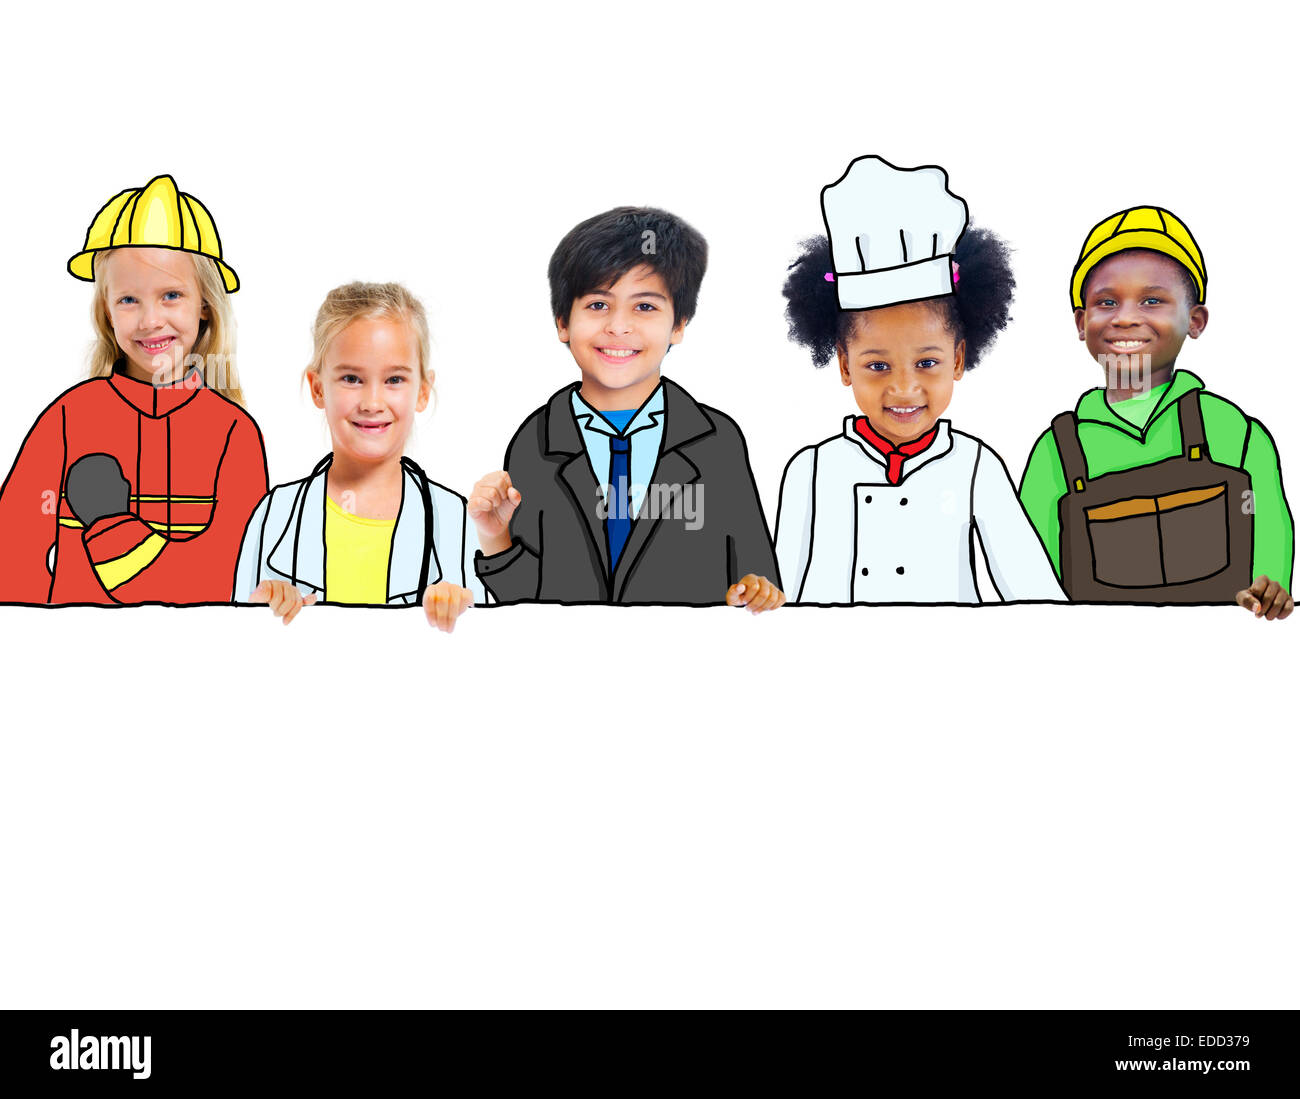 Un grupo de niños con conceptos de ocupación profesional. Foto de stock